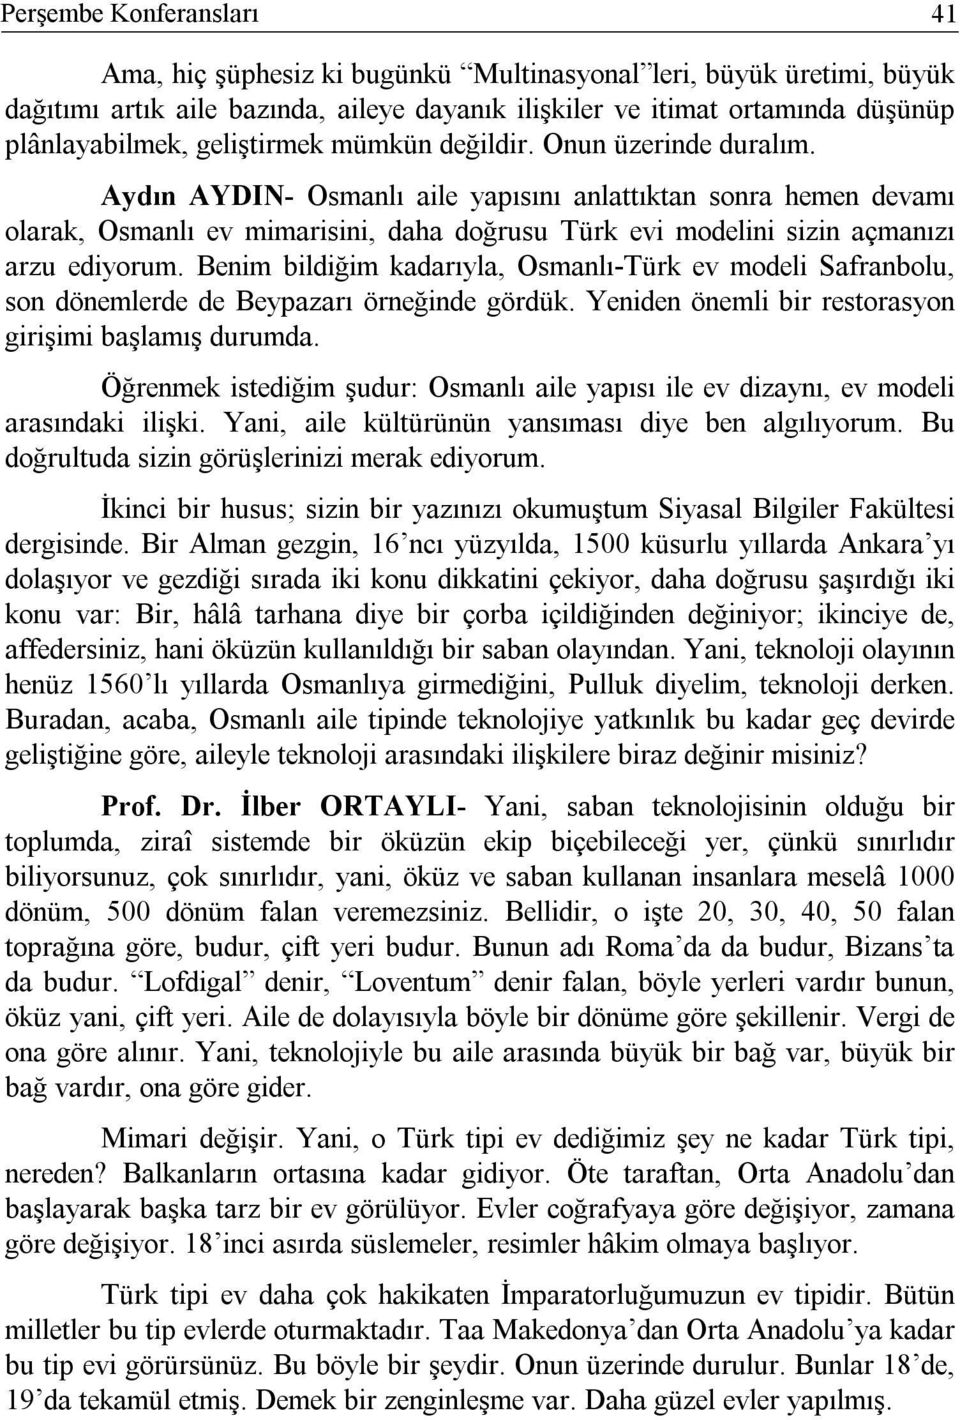 Benim bildiğim kadarıyla, Osmanlı-Türk ev modeli Safranbolu, son dönemlerde de Beypazarı örneğinde gördük. Yeniden önemli bir restorasyon girişimi başlamış durumda.